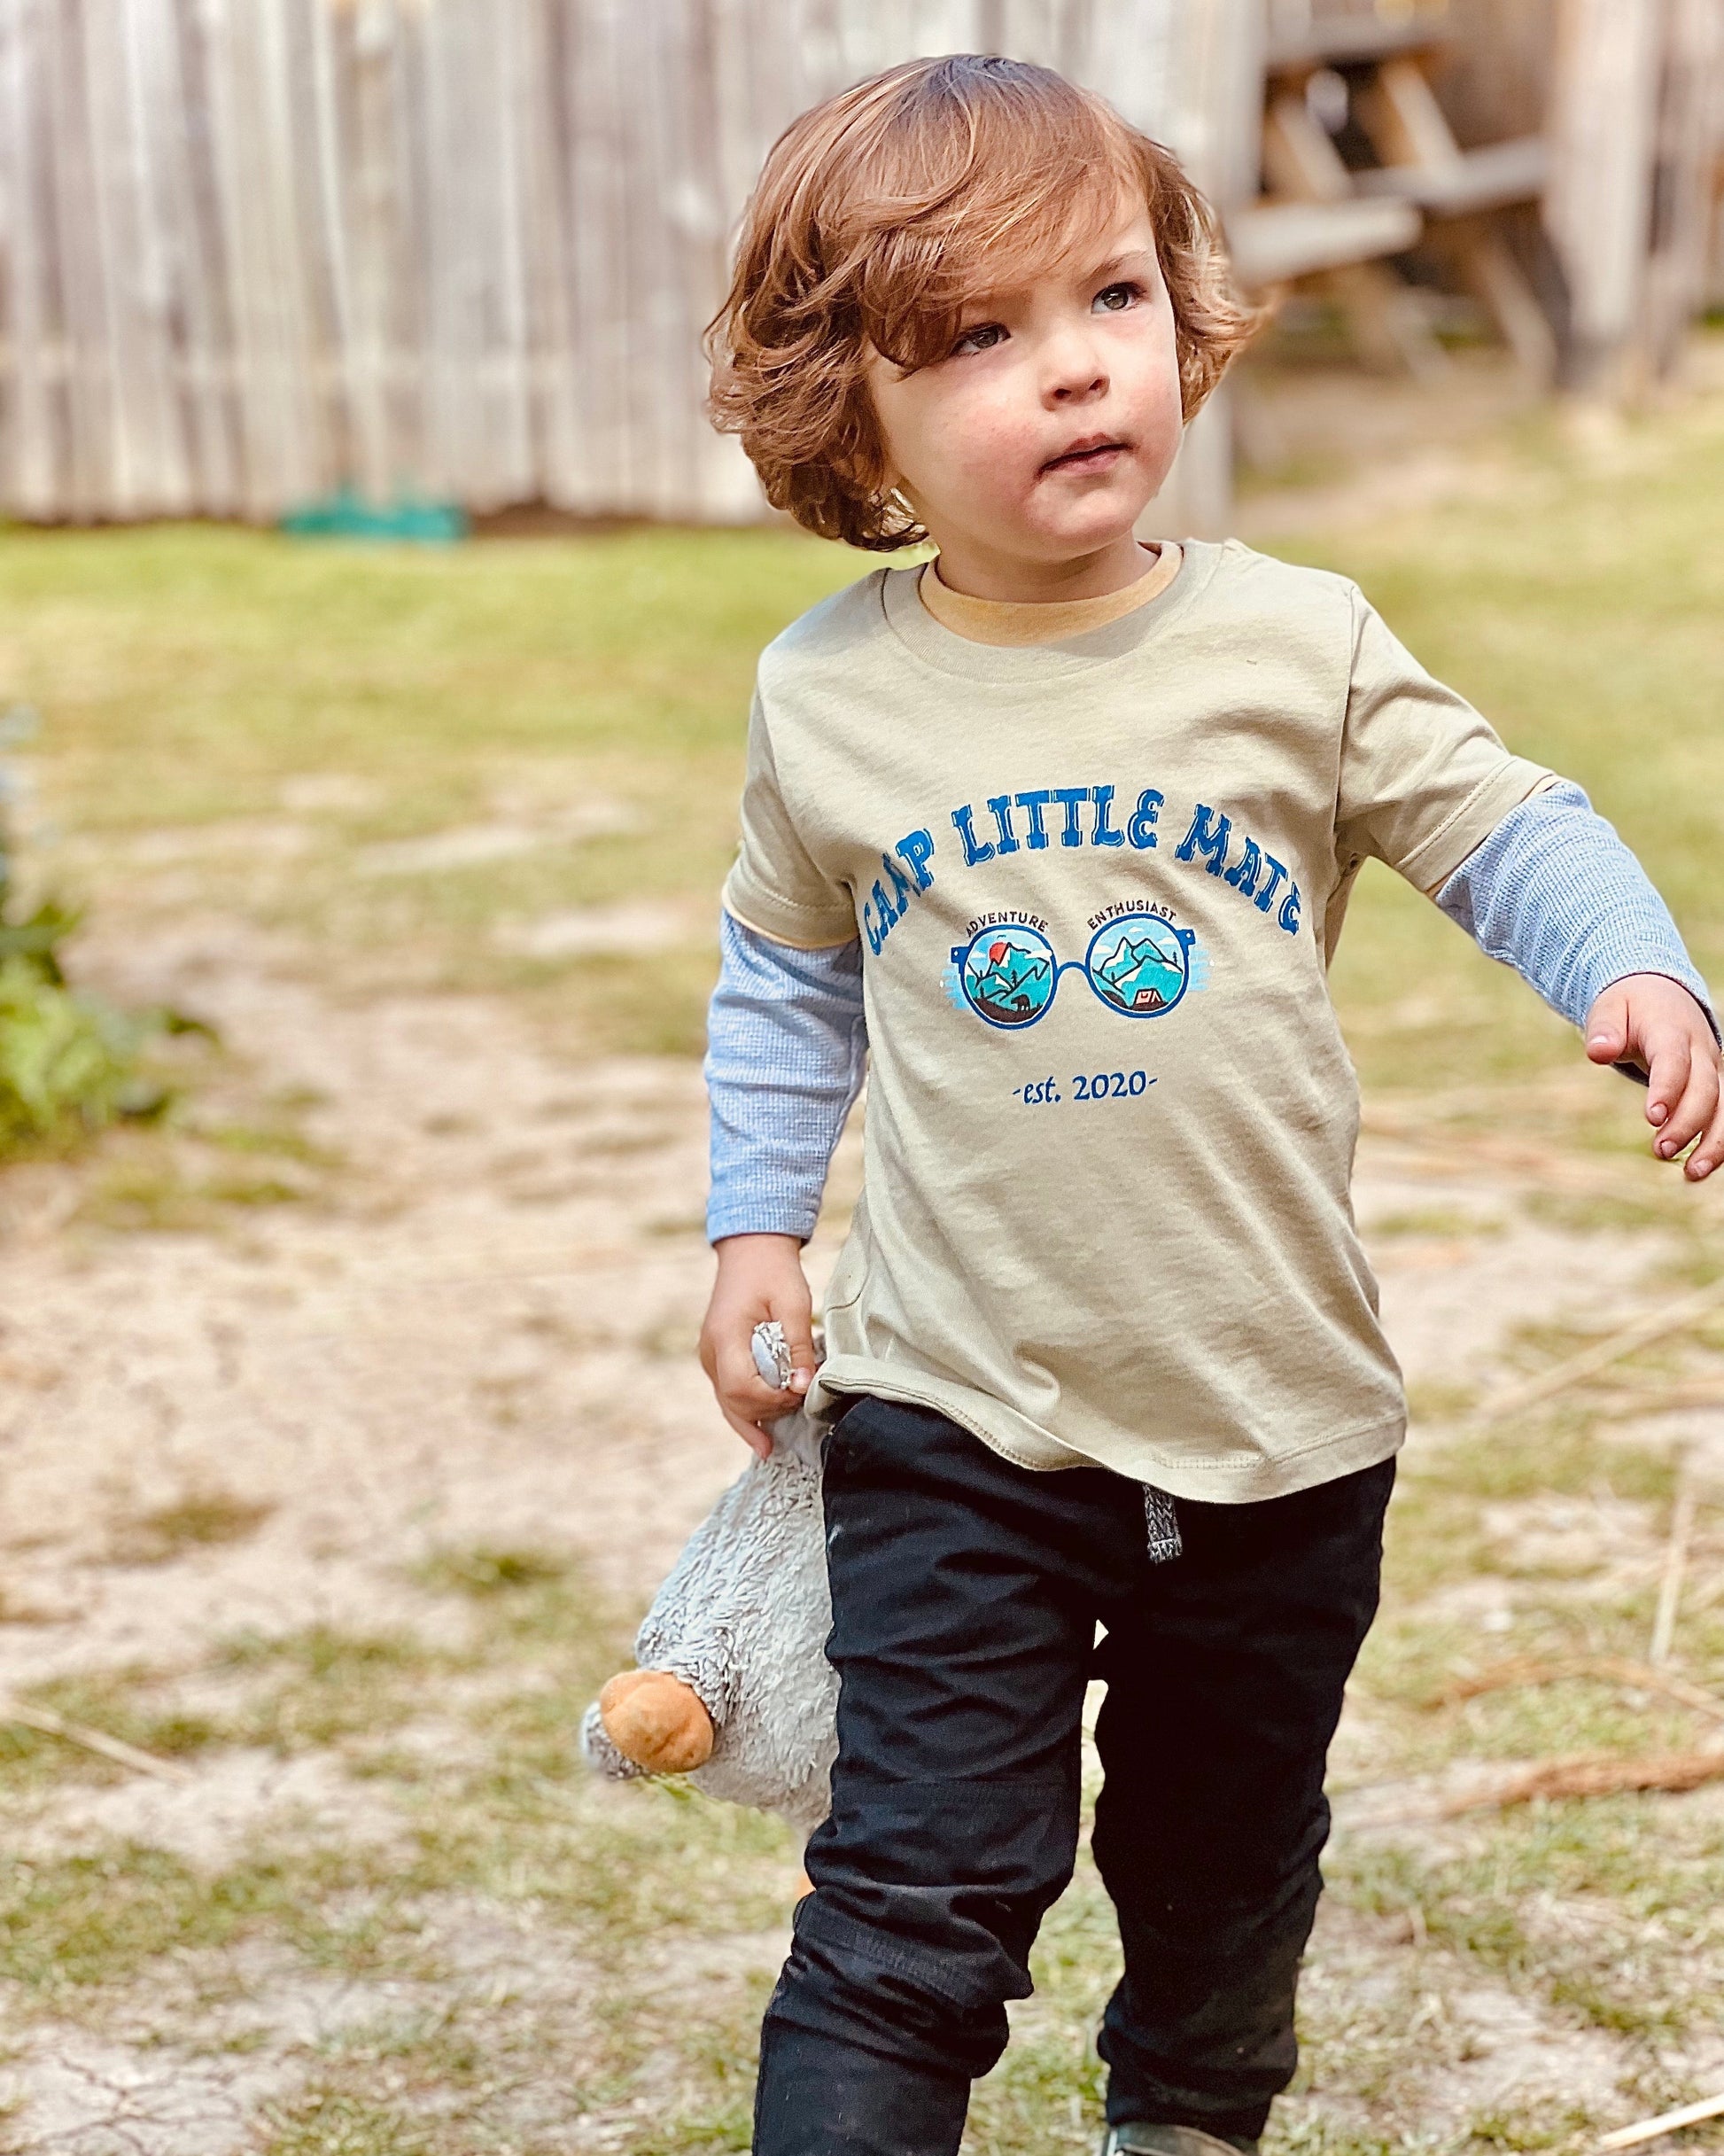 CAMP LITTLE MATE SUNNIES - Kids Short Sleeve T Shirt - Little Mate Adventures